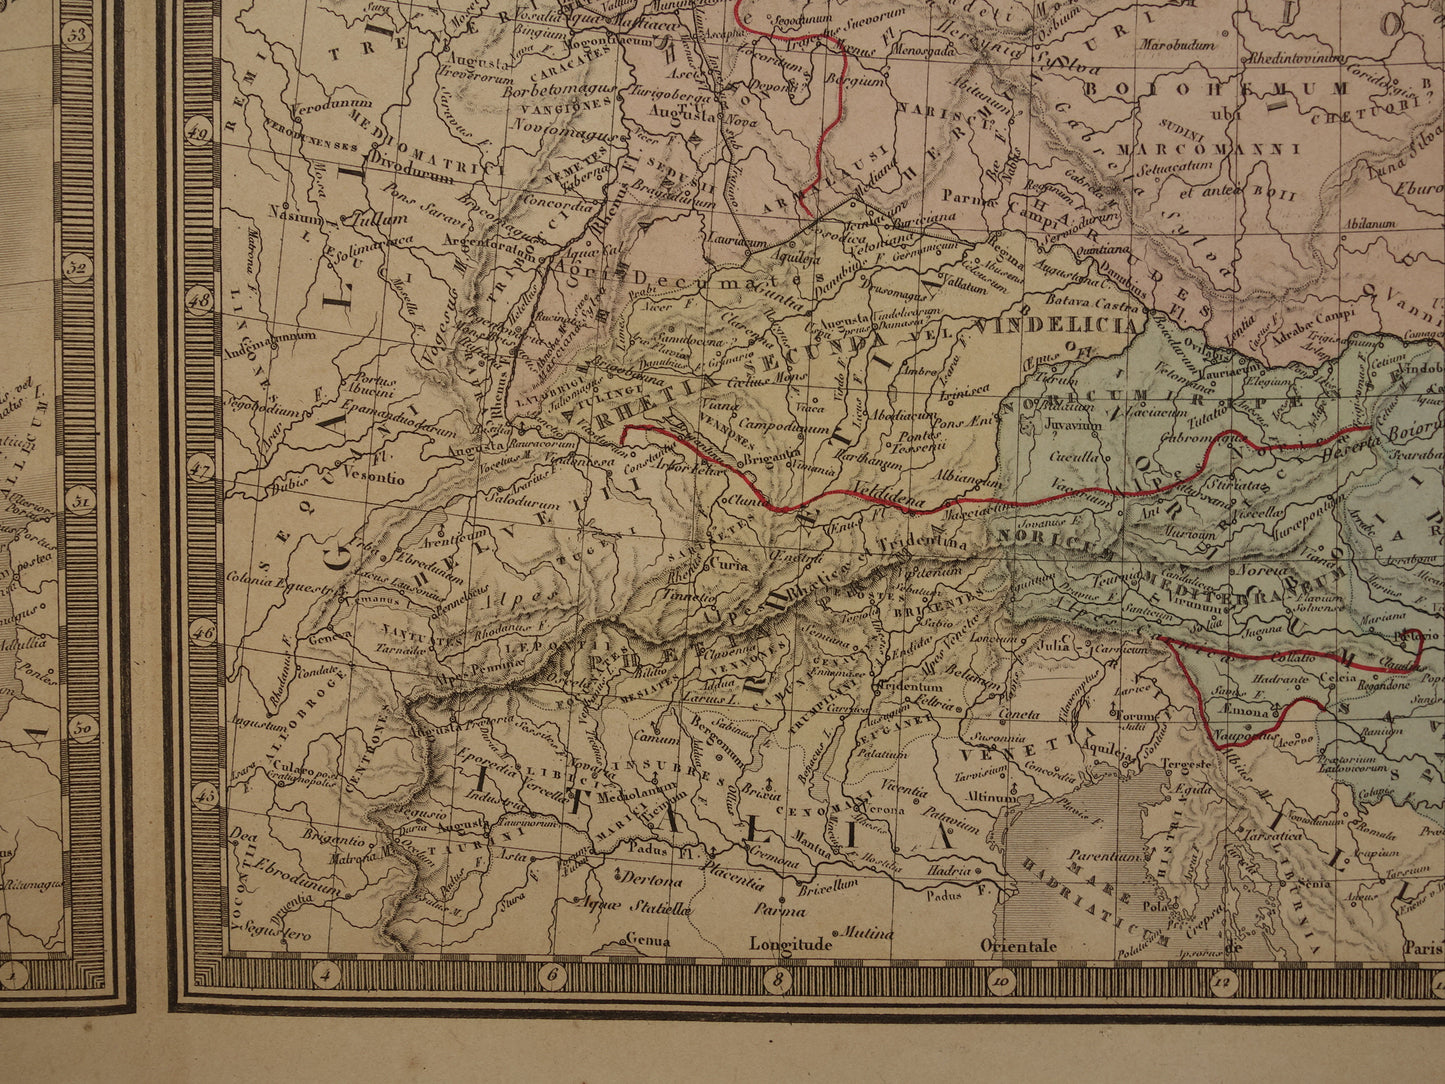 Oude historische kaart van Groot-Brittanië en Duitsland in de klassieke oudheid 1876 originele antieke handgekleurde kaart poster van Romeinse Rijk Brittannia Hibernia Germania